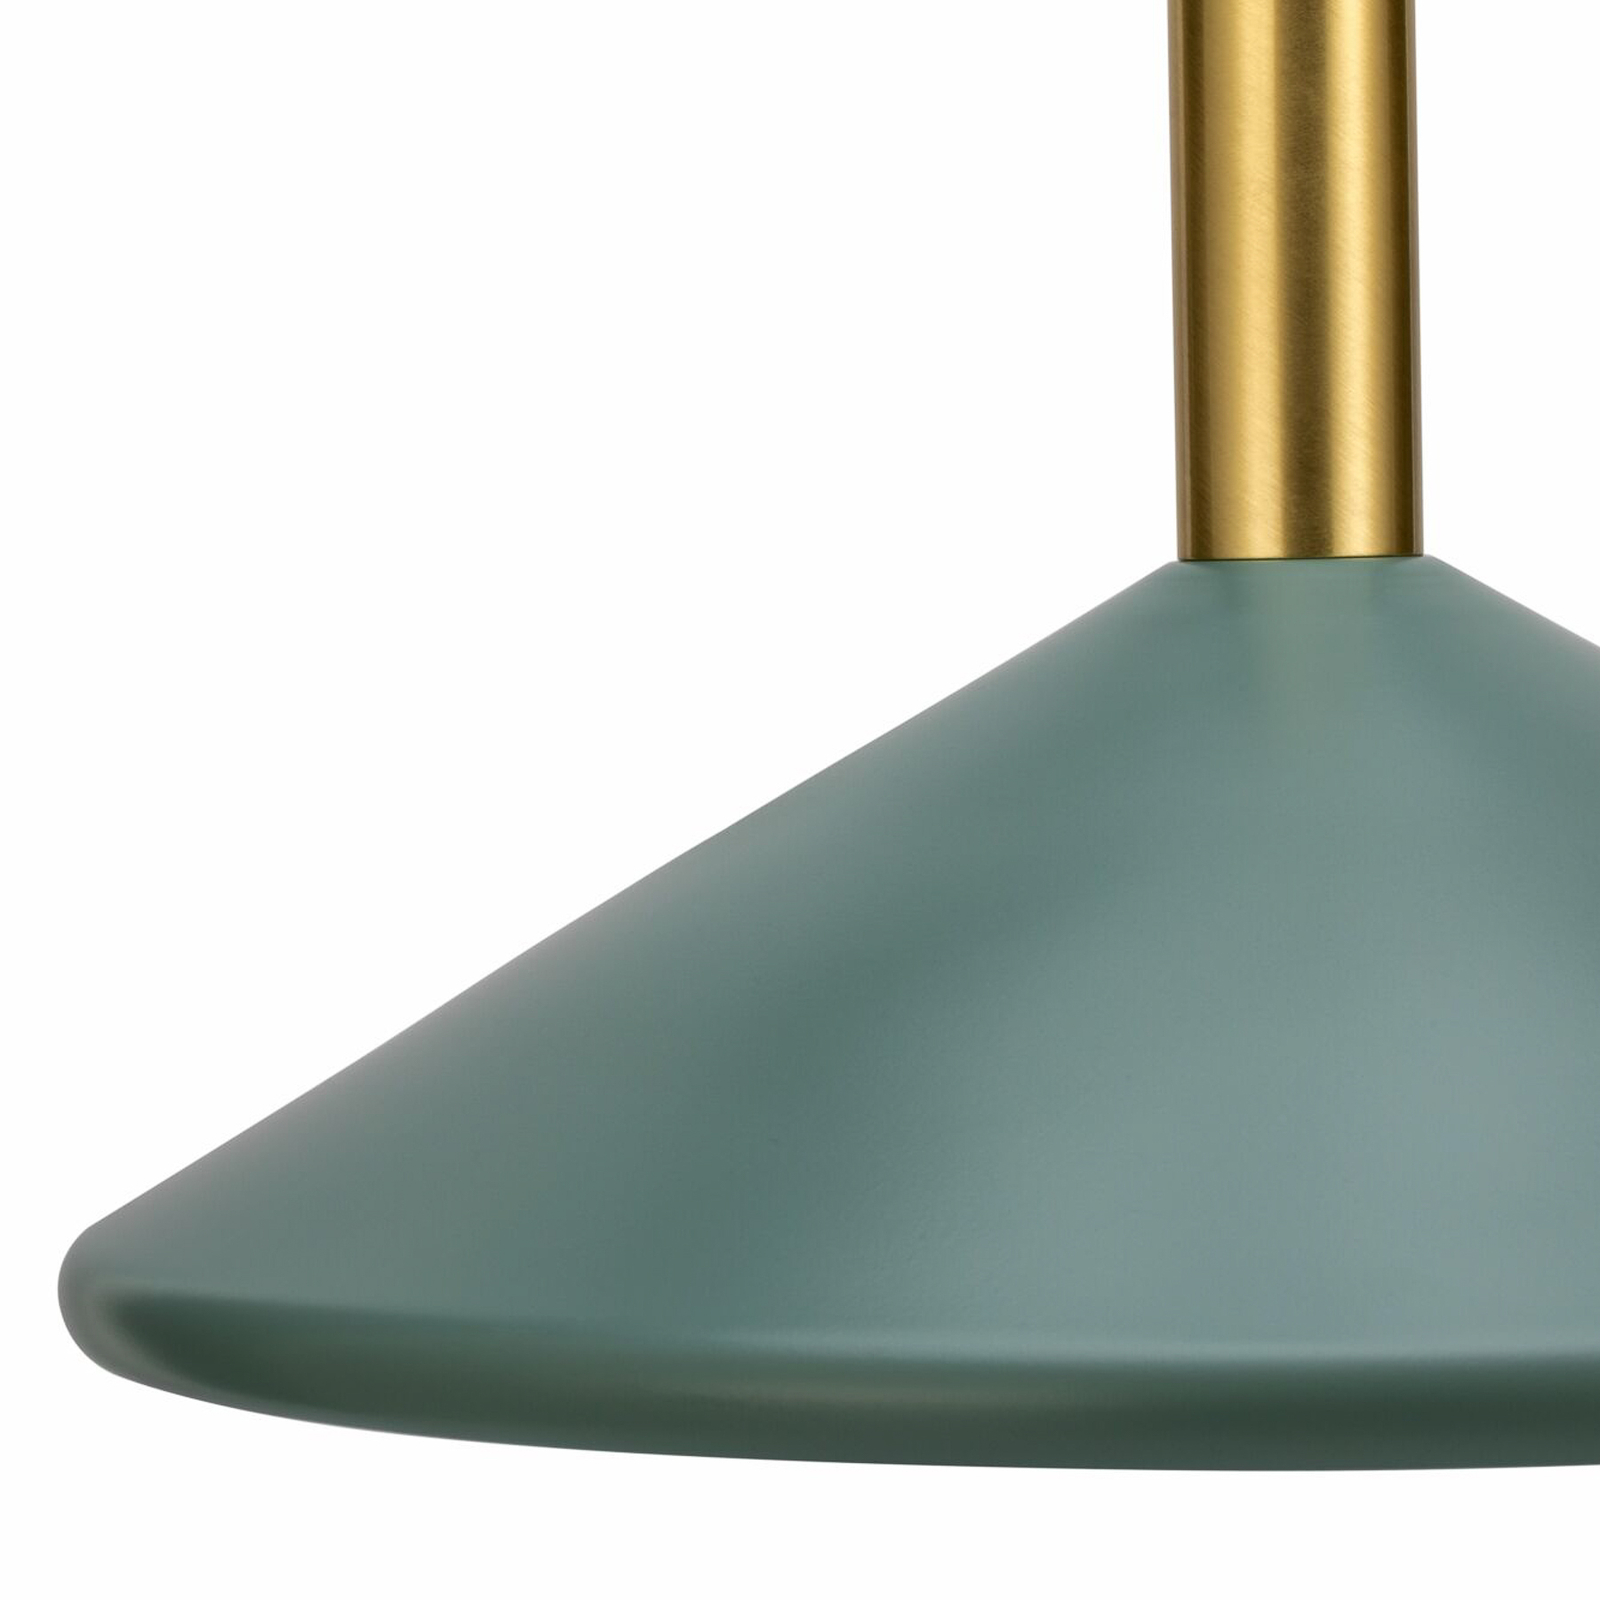 Pauleen Fancy Delight hanglamp, zachtgroen/goud